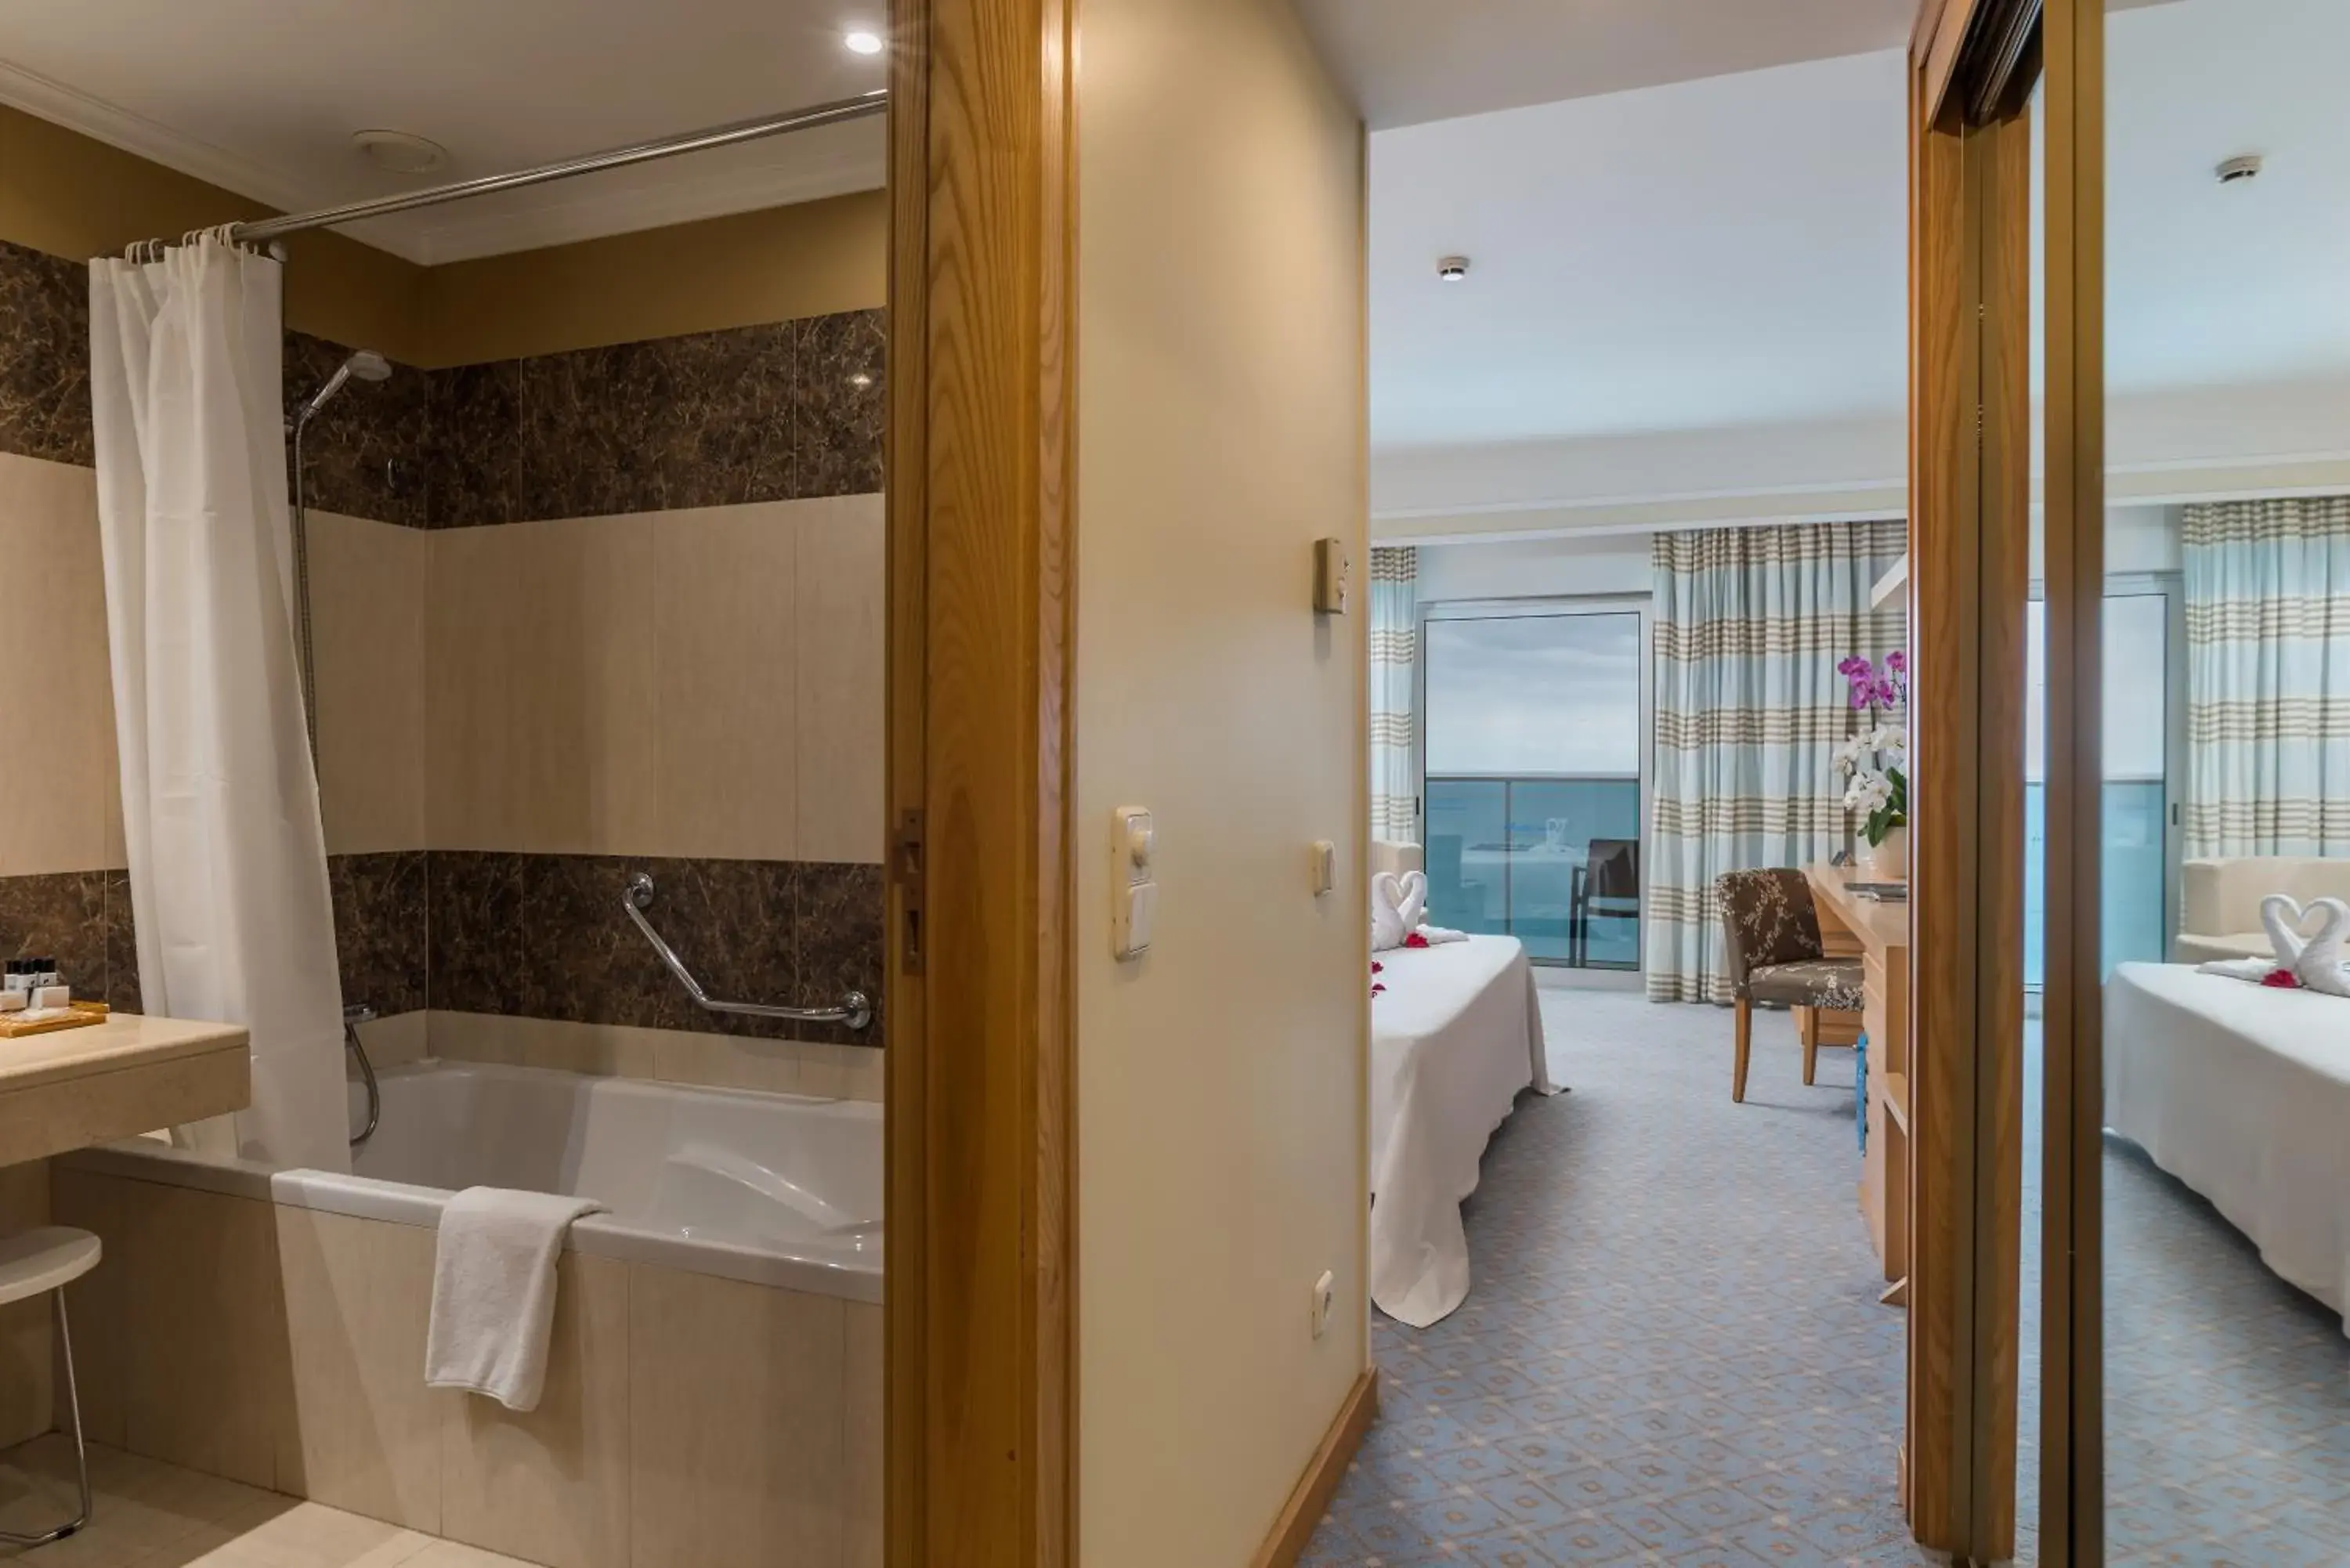 Bedroom, Bathroom in Pestana Carlton Madeira Ocean Resort Hotel